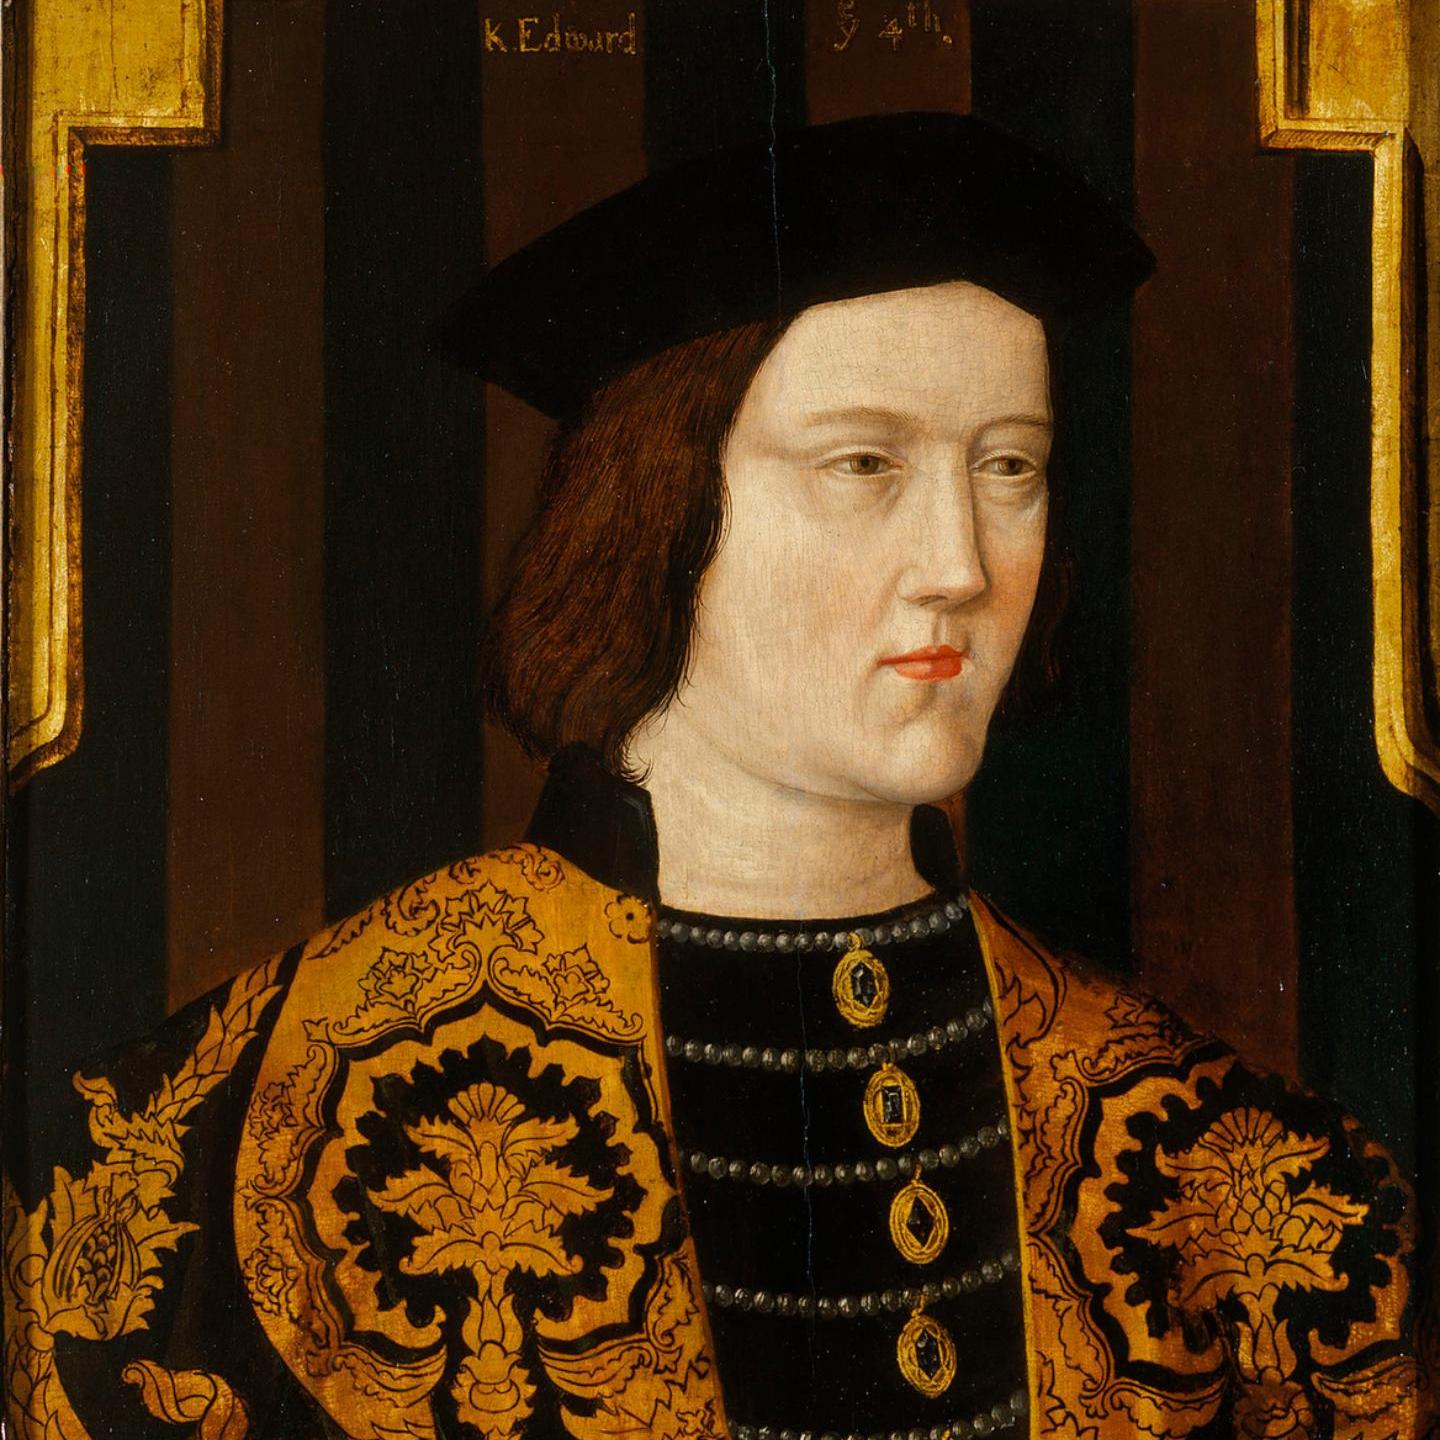  Король Эдуард IV Йорк. 